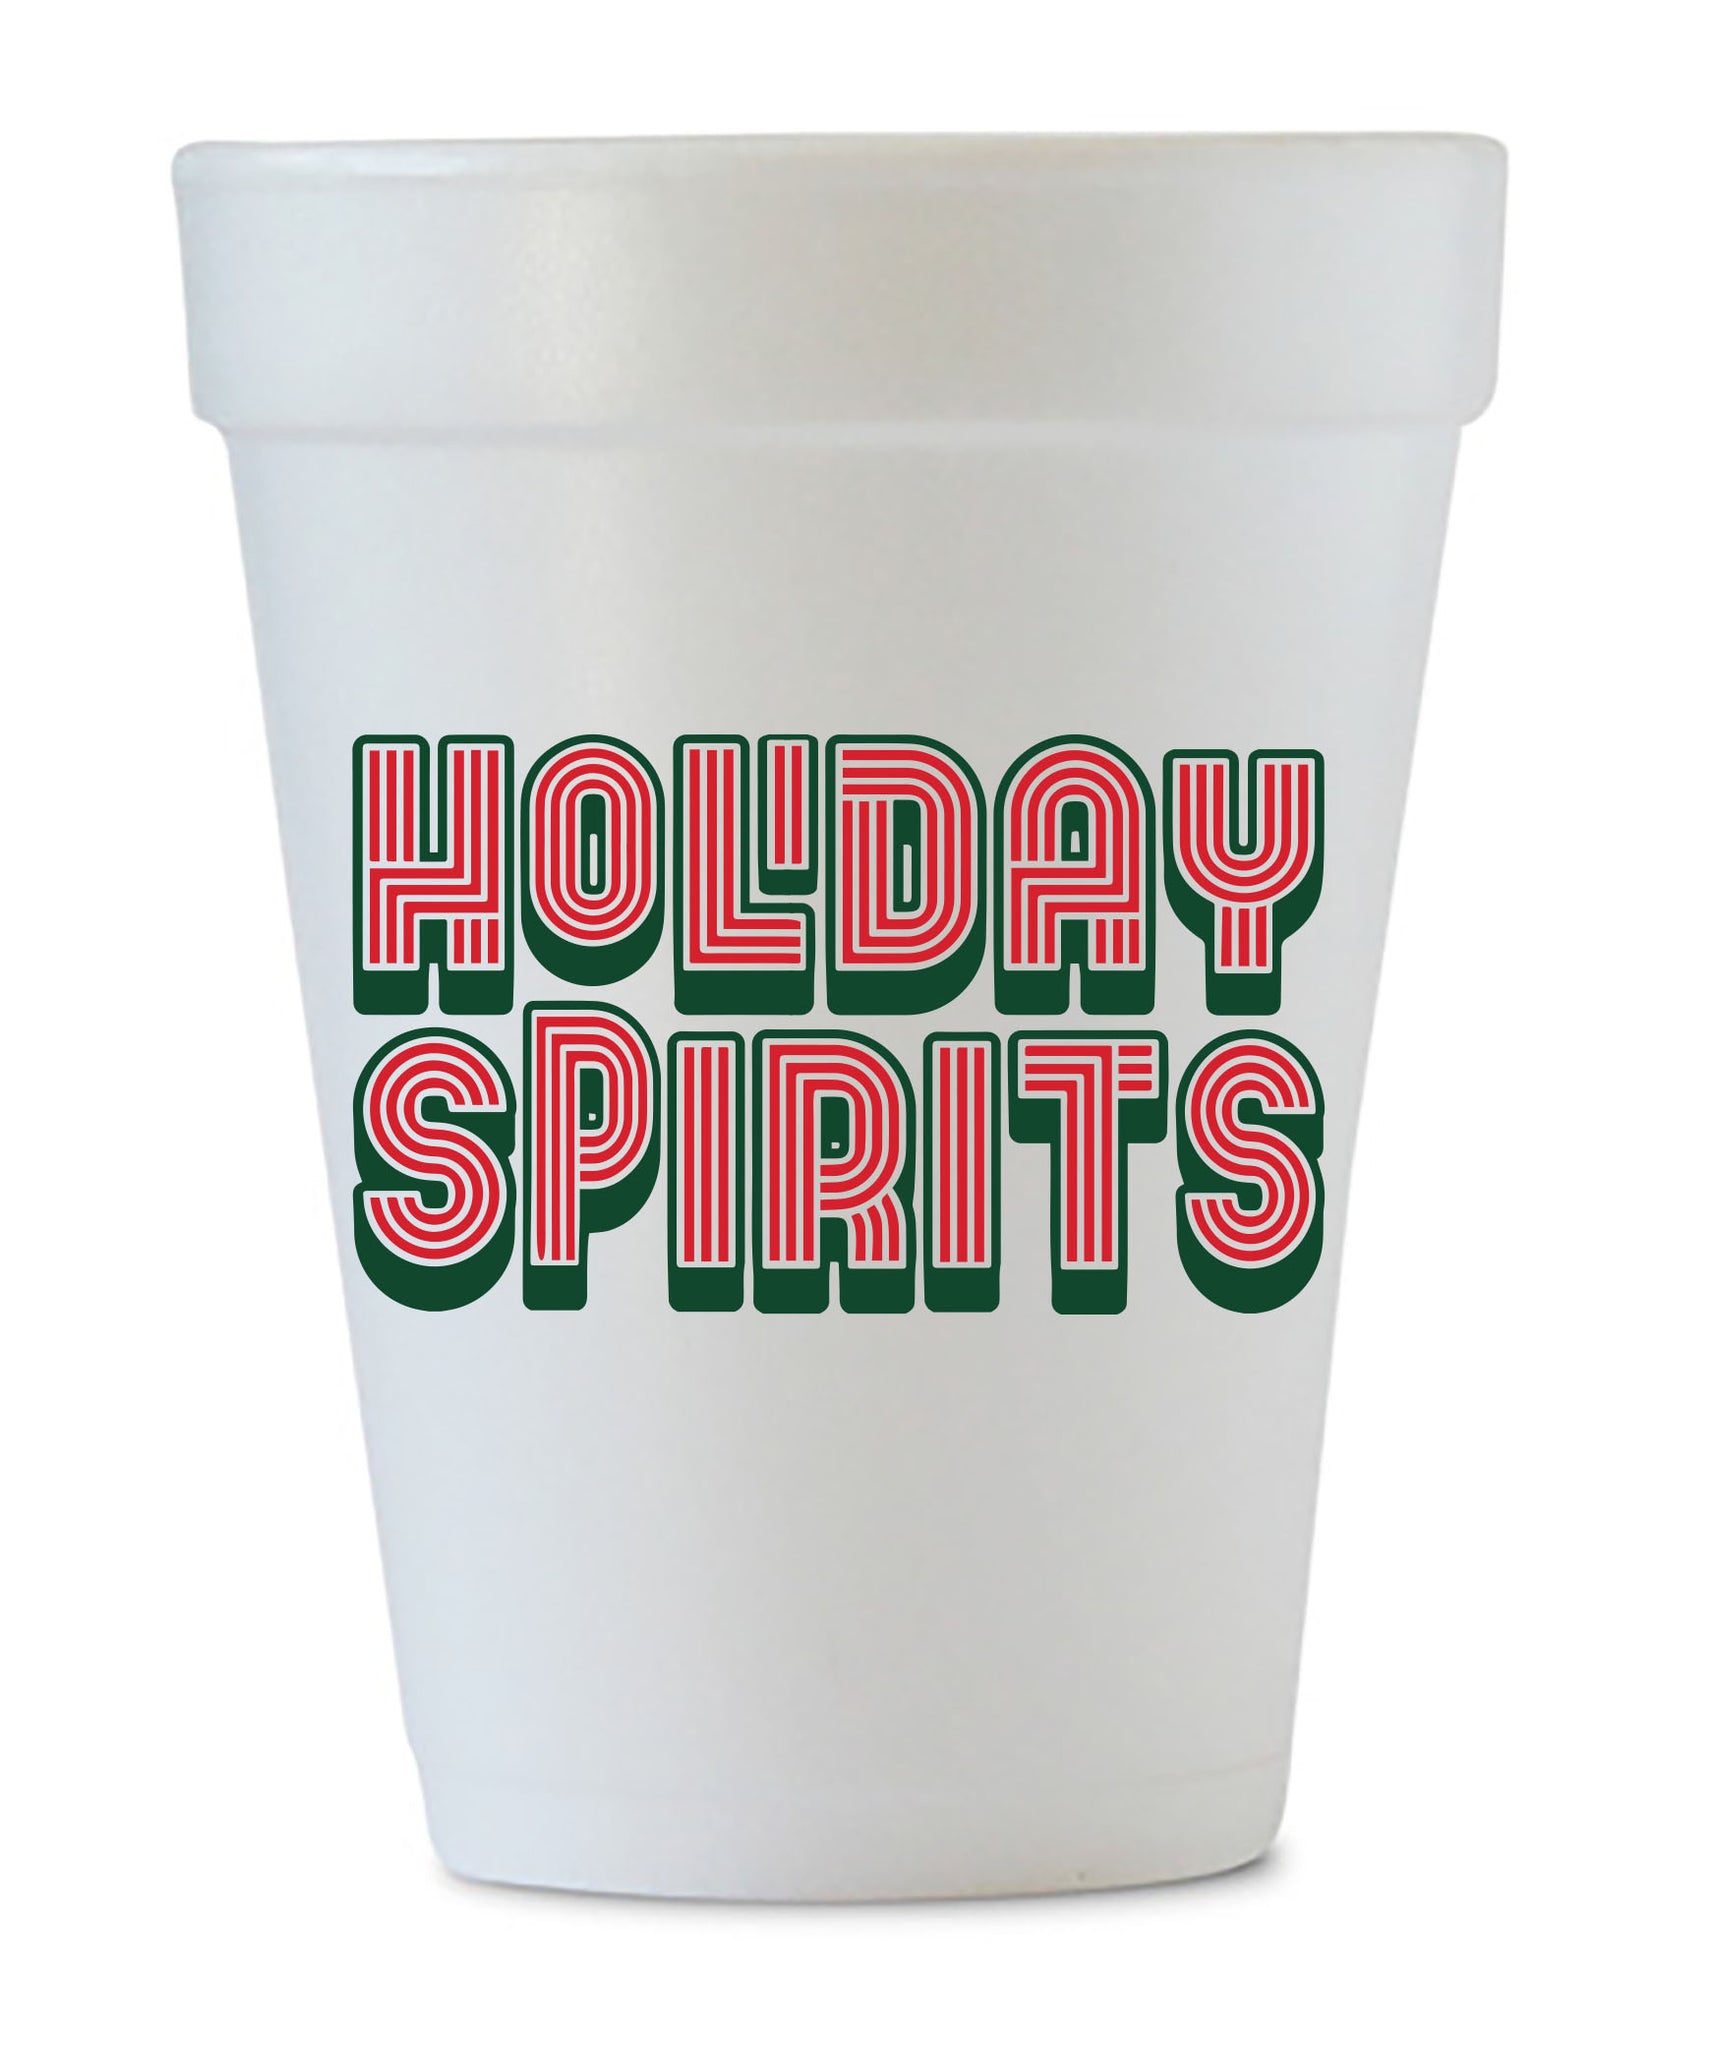 holiday spirits styrofoam